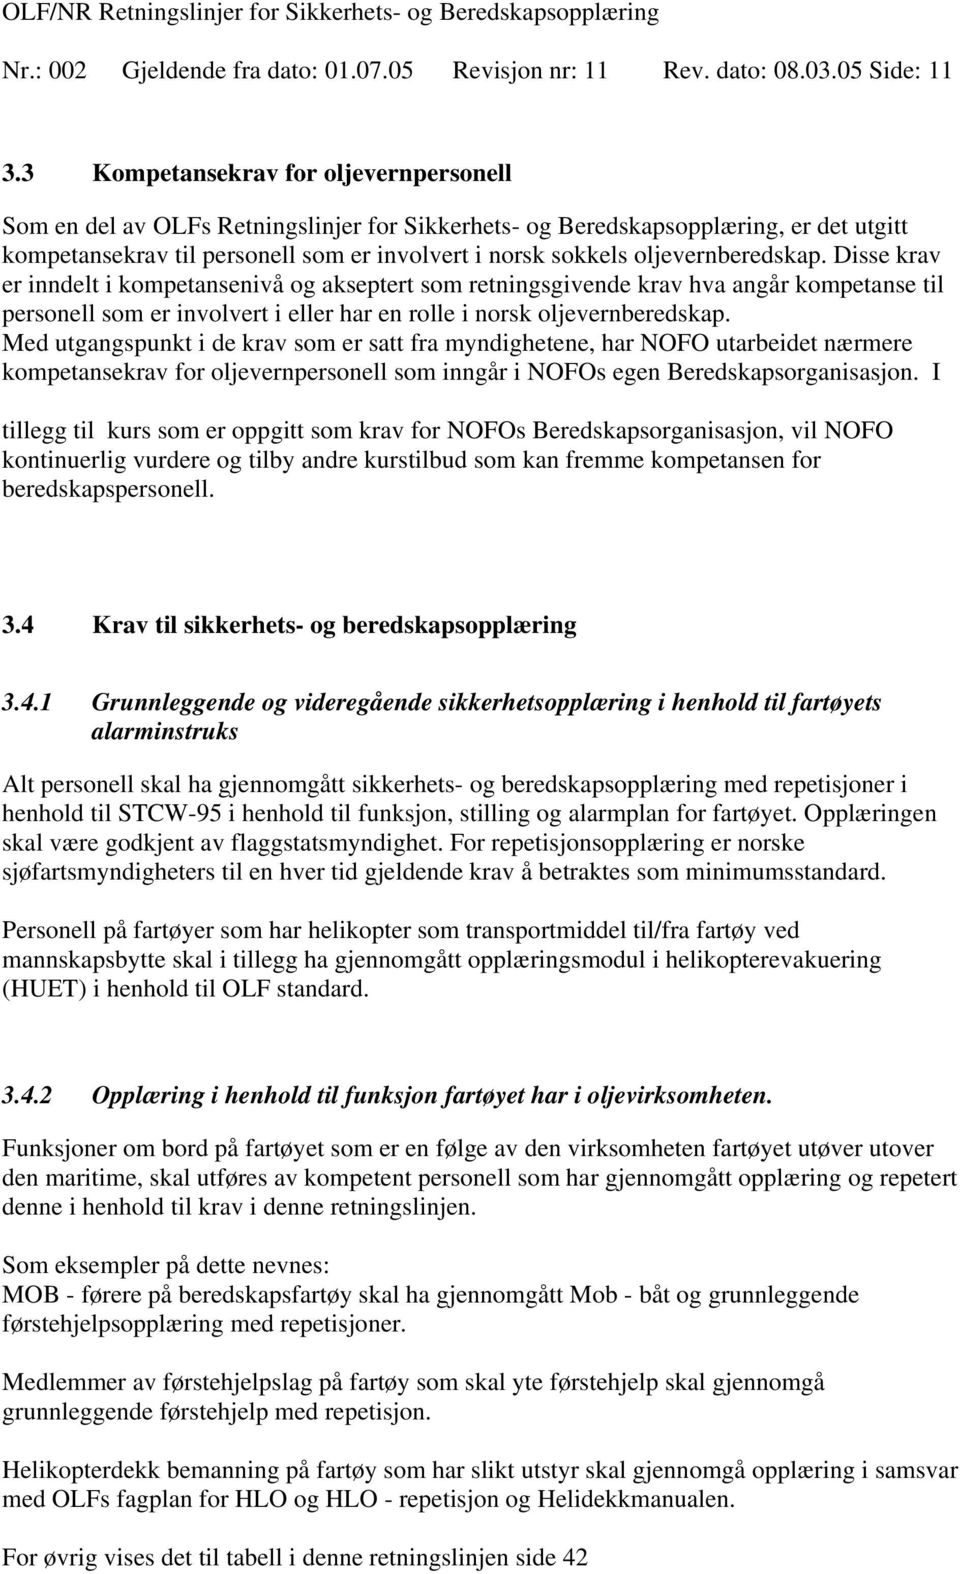 oljevernberedskap. Disse krav er inndelt i kompetansenivå og akseptert som retningsgivende krav hva angår kompetanse til personell som er involvert i eller har en rolle i norsk oljevernberedskap.